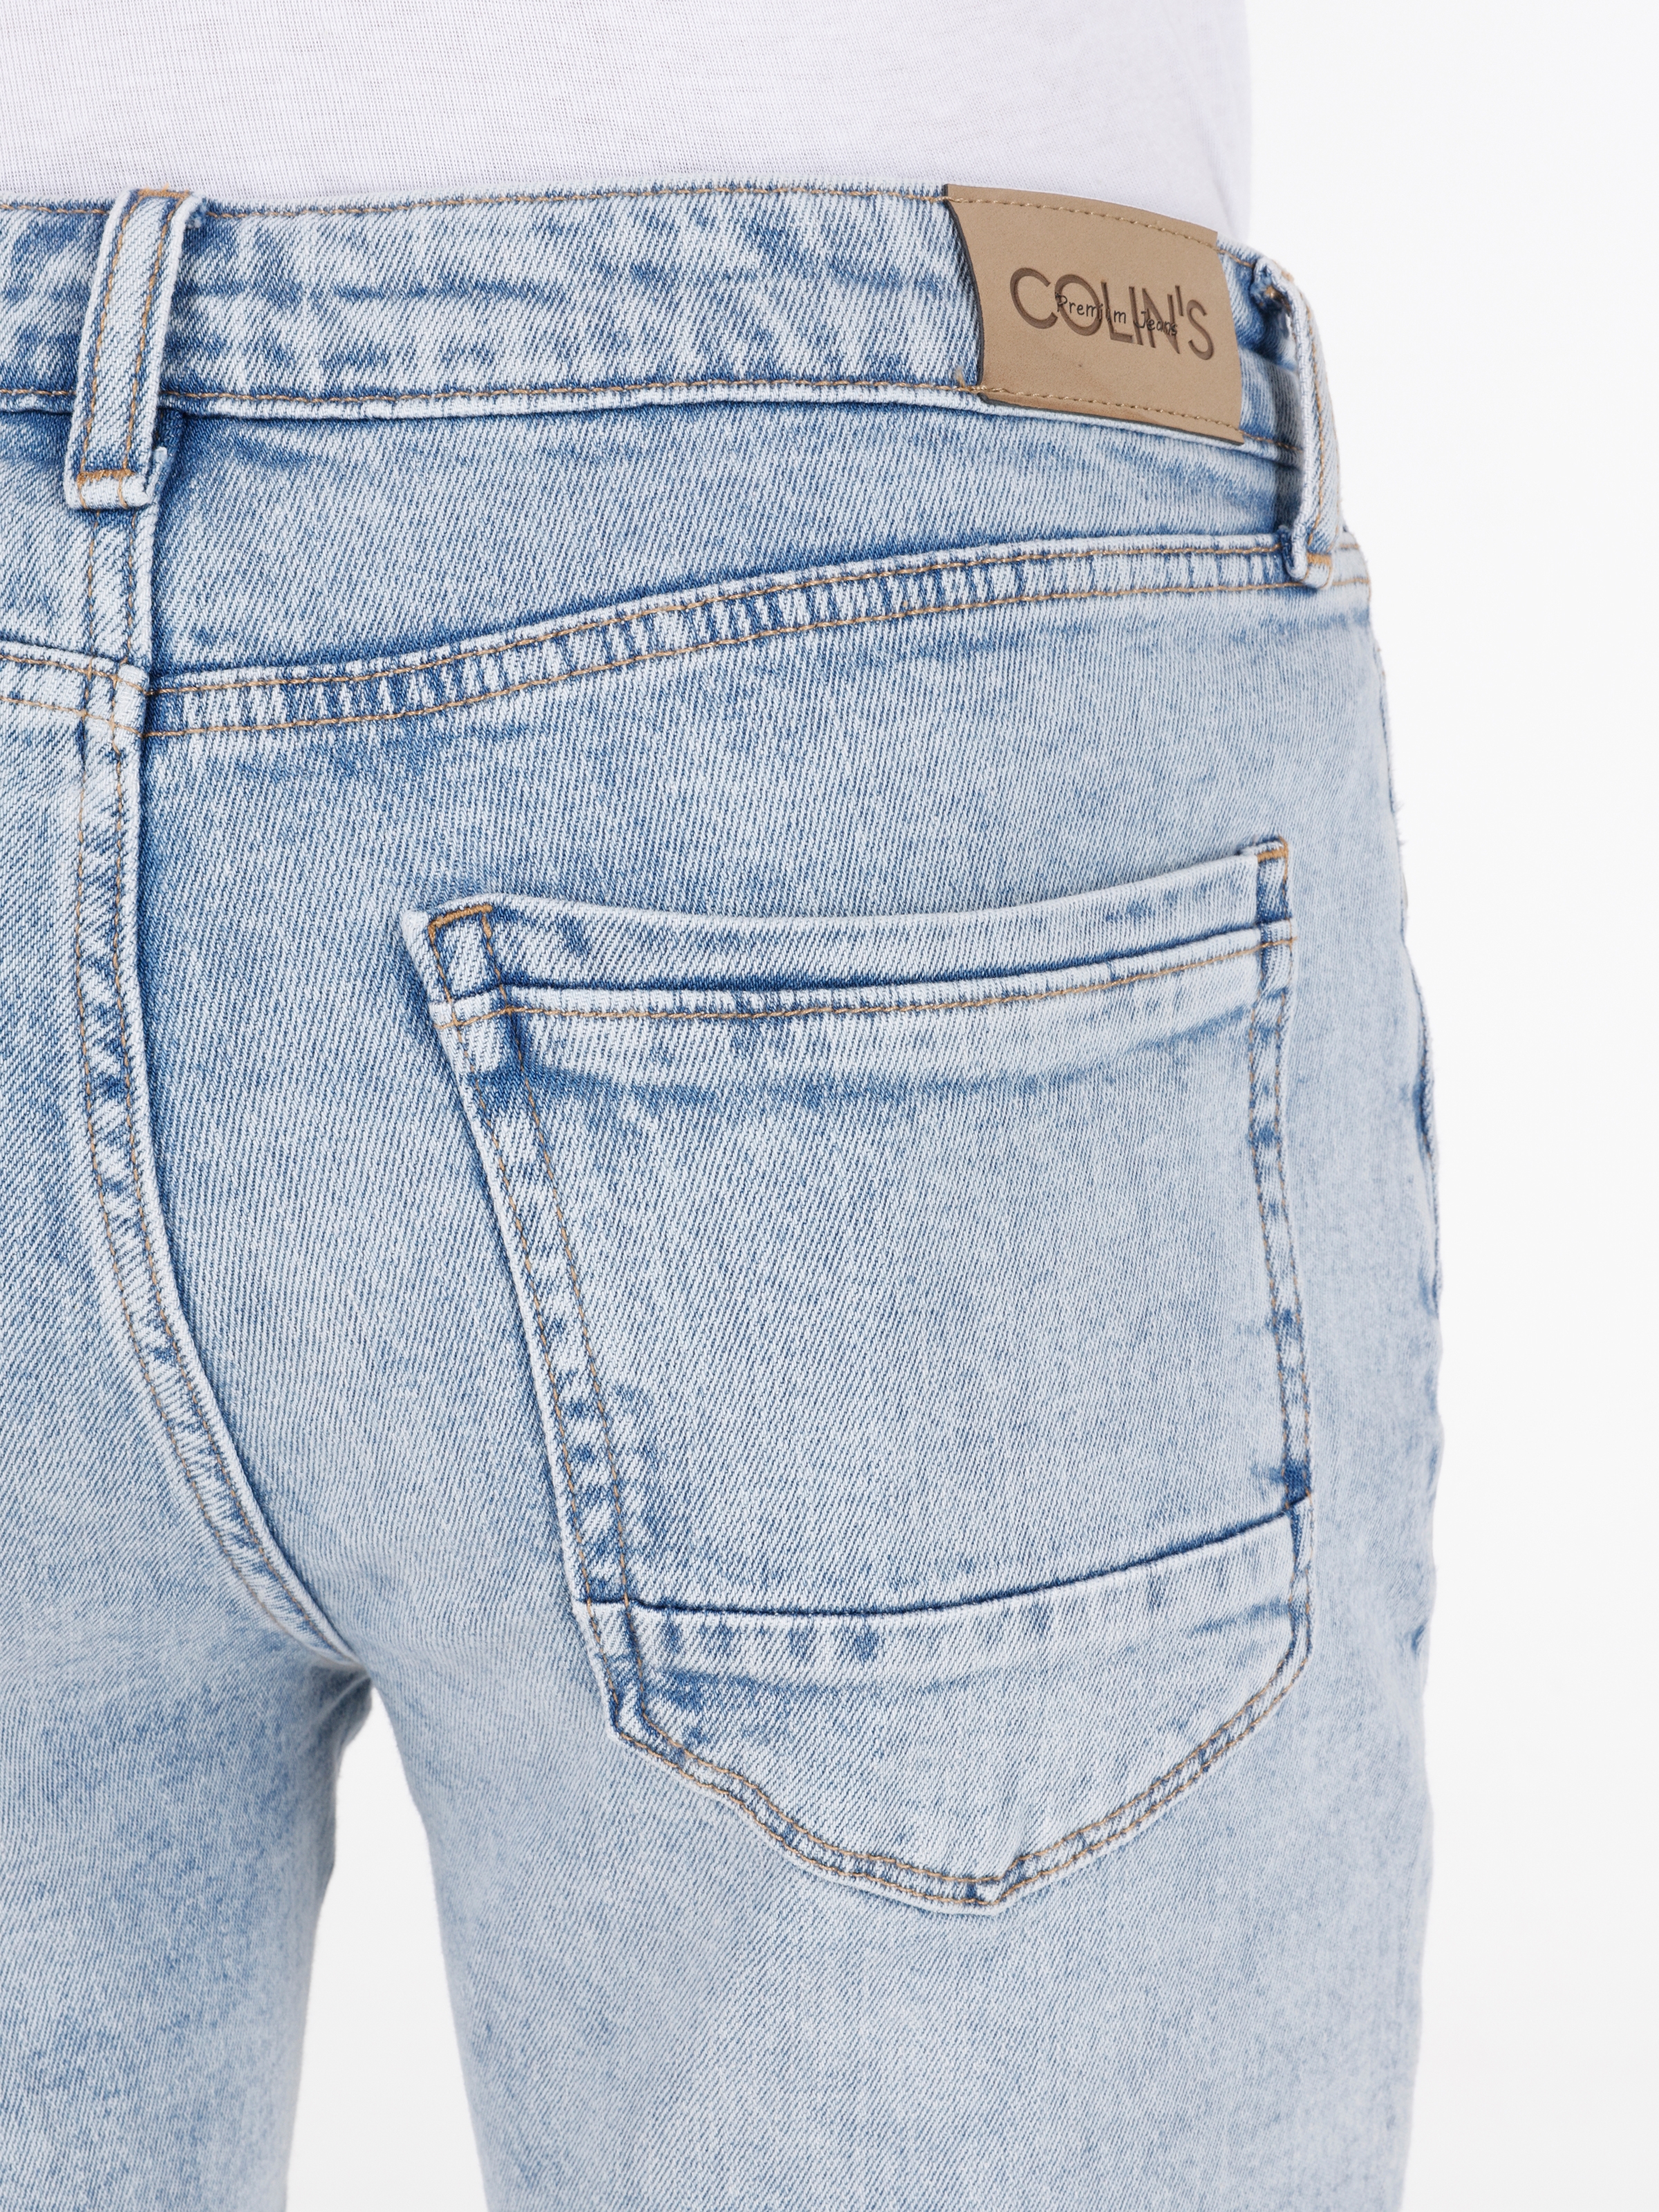 Afișați detalii pentru Short / Pantaloni Scurti De Barbati Albastru deschis Straight Fit 044 KARL 